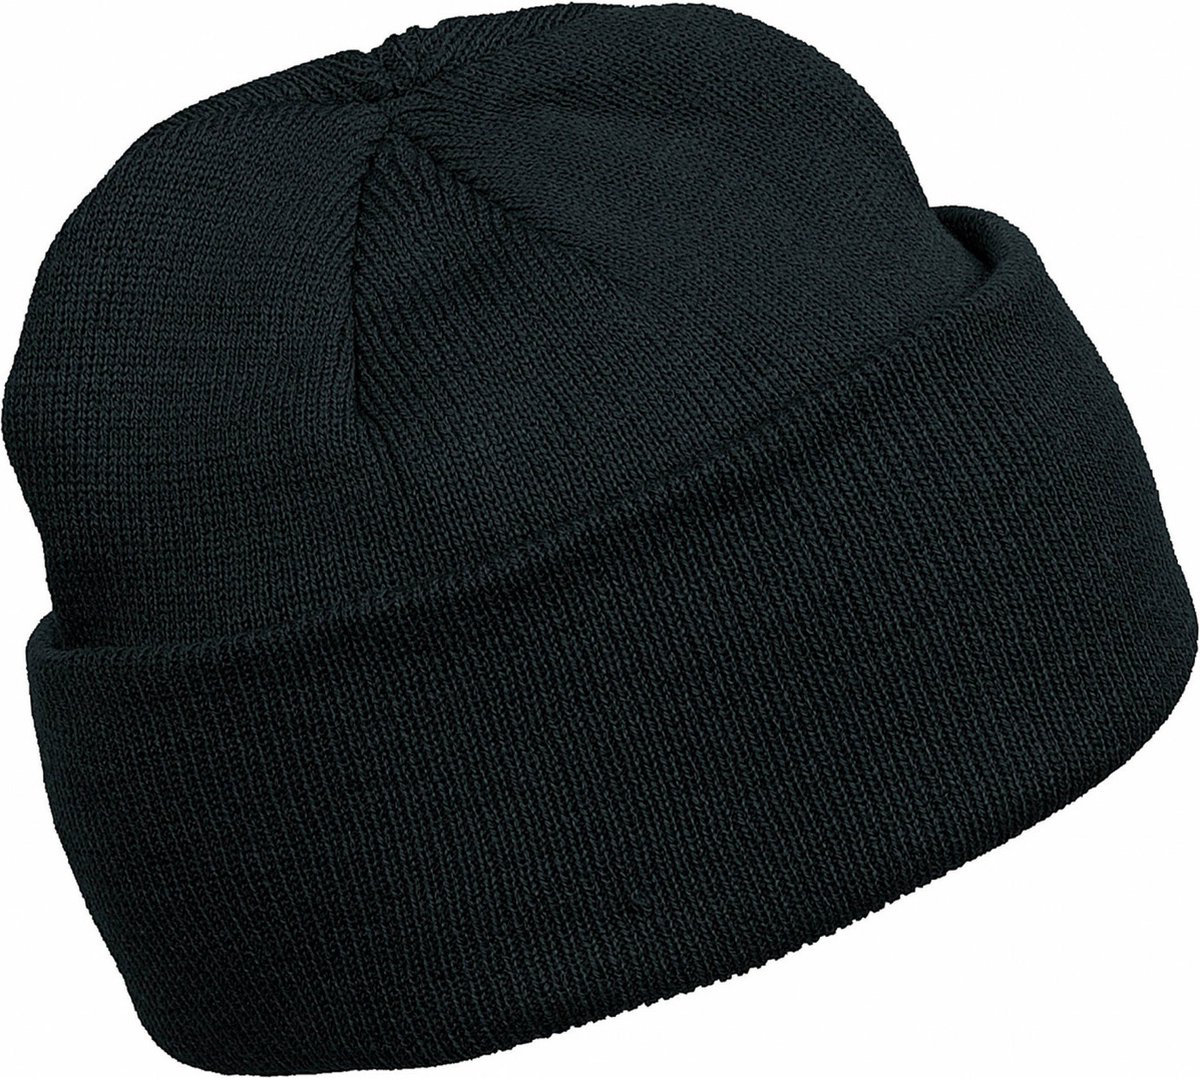 K-up Hats Wintermuts Beanie Yukon - zwart - heren/dames - sterk/zacht/licht gebreid 100% Acryl - Dames/herenmuts